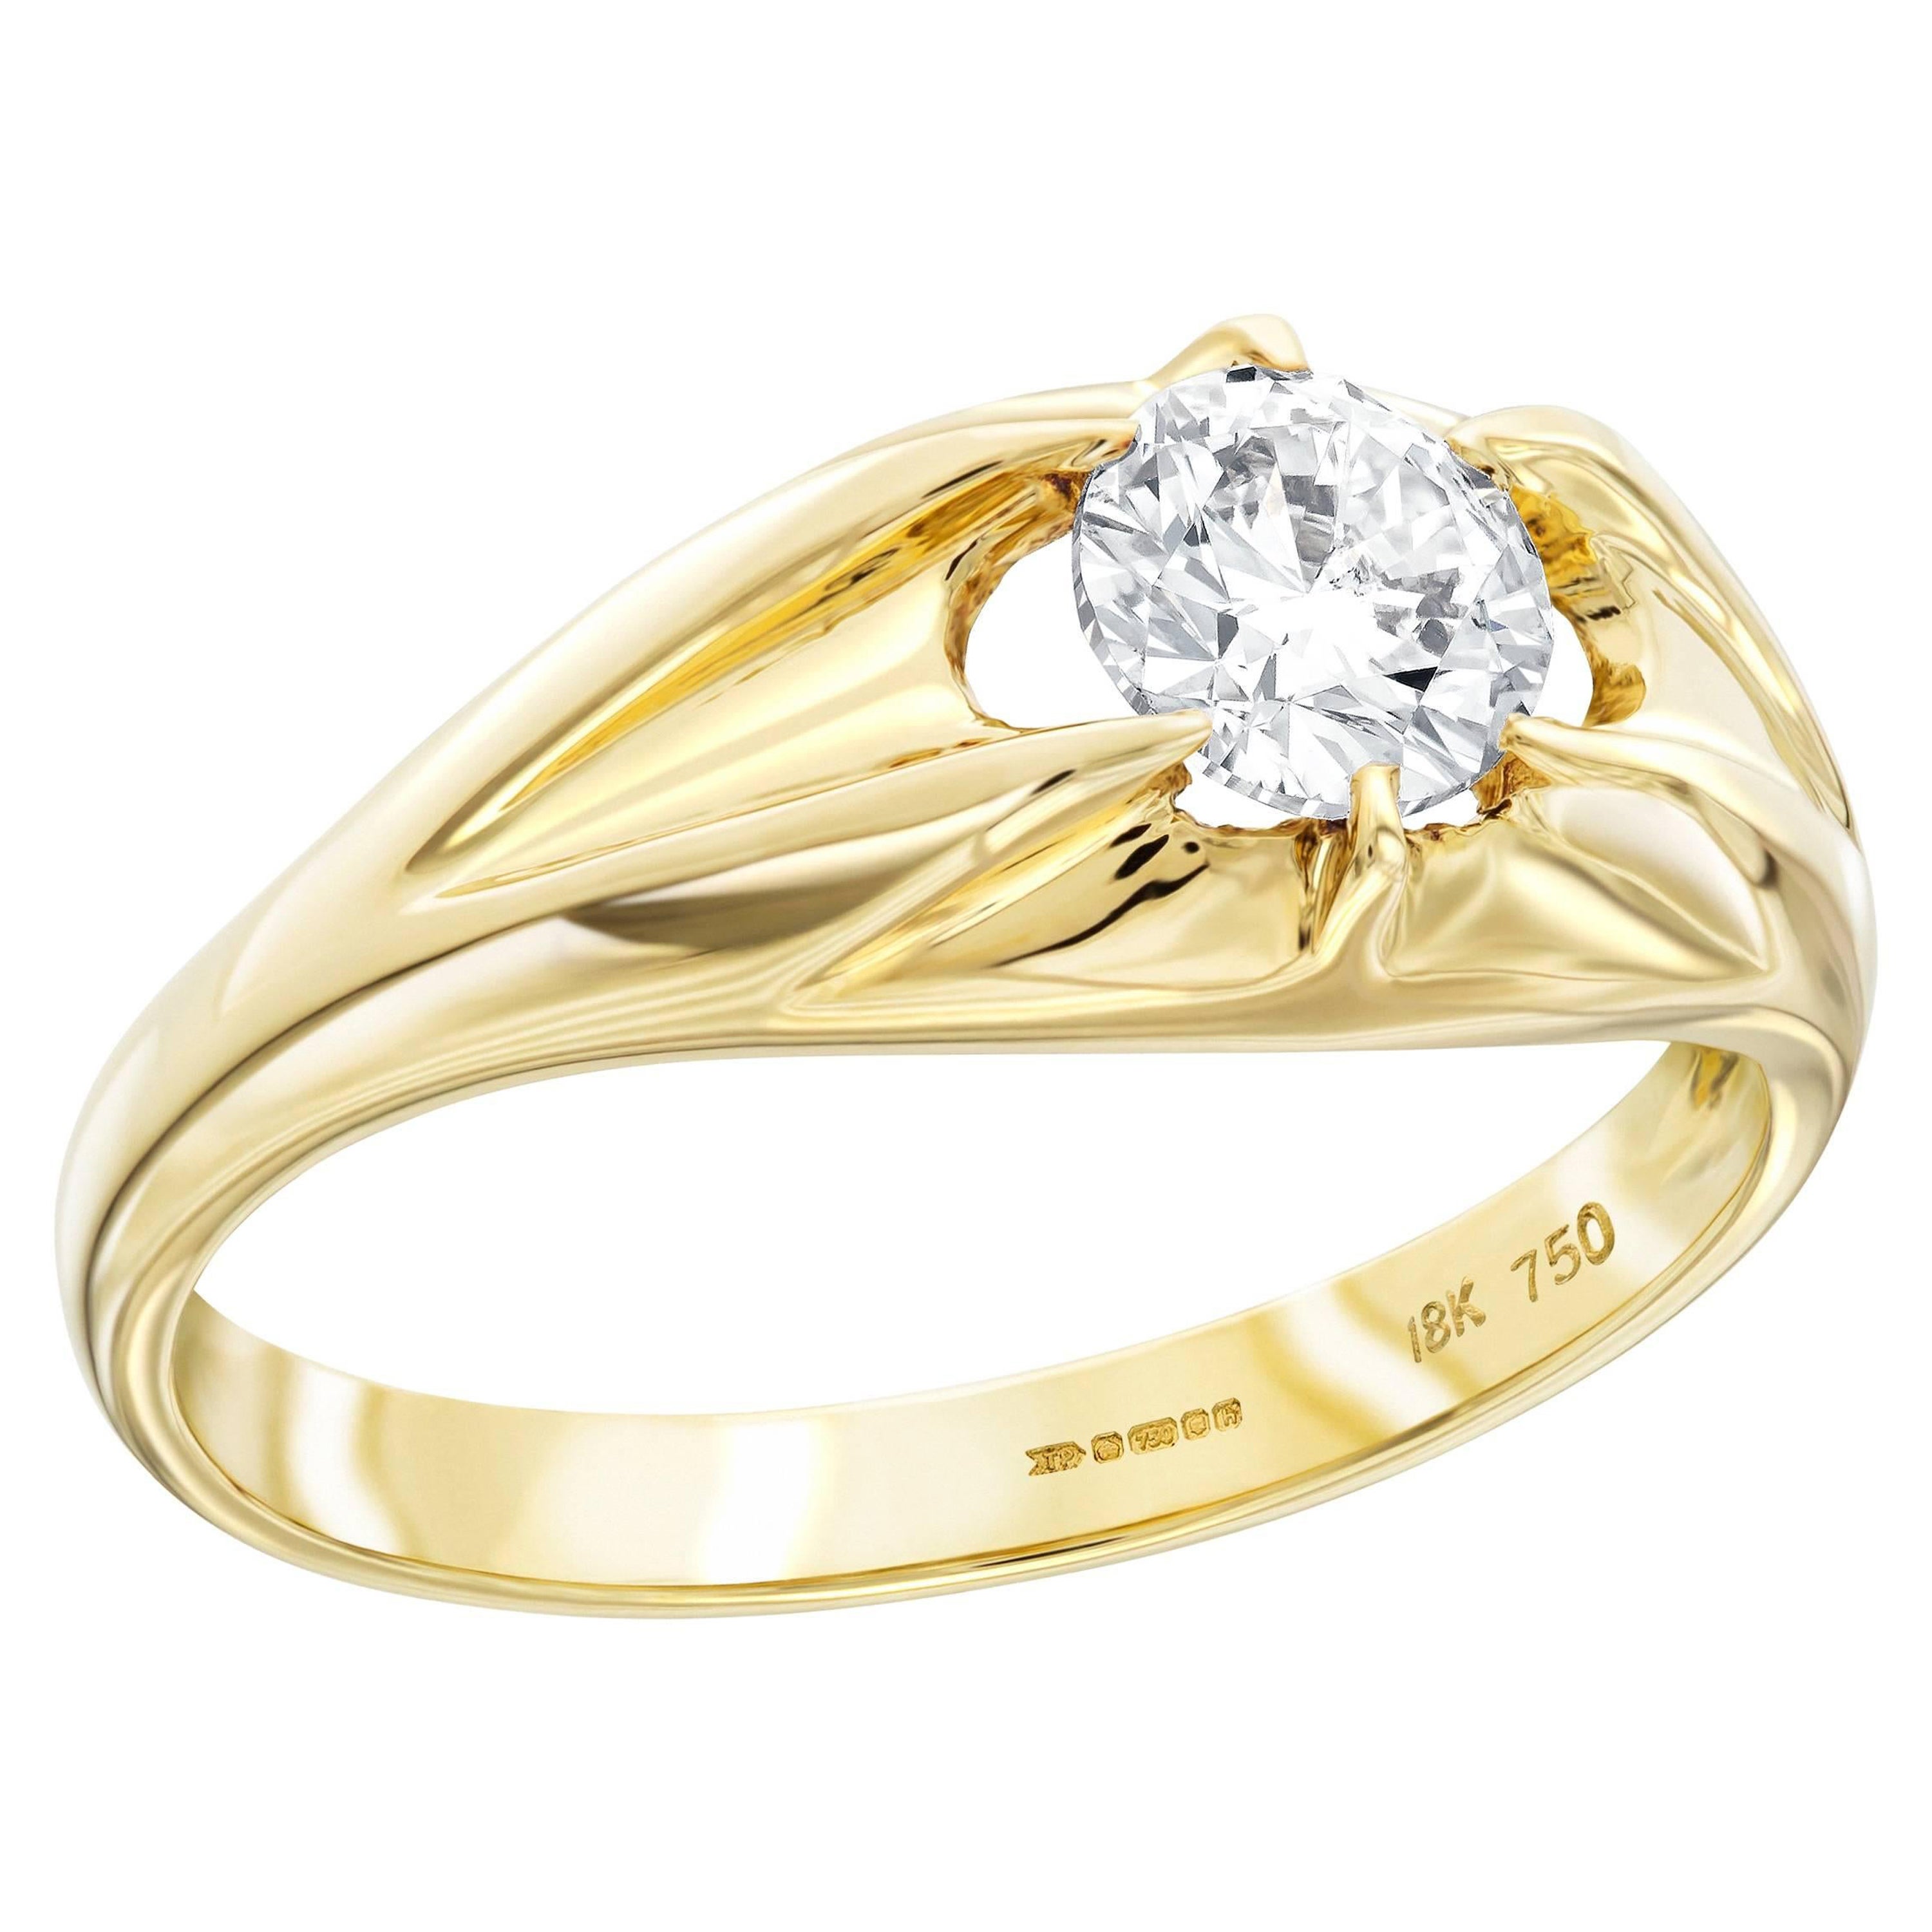 Tresor Paris, bague signet à griffes en or 18 KT sertie de diamants blancs ronds de 0,30 carat